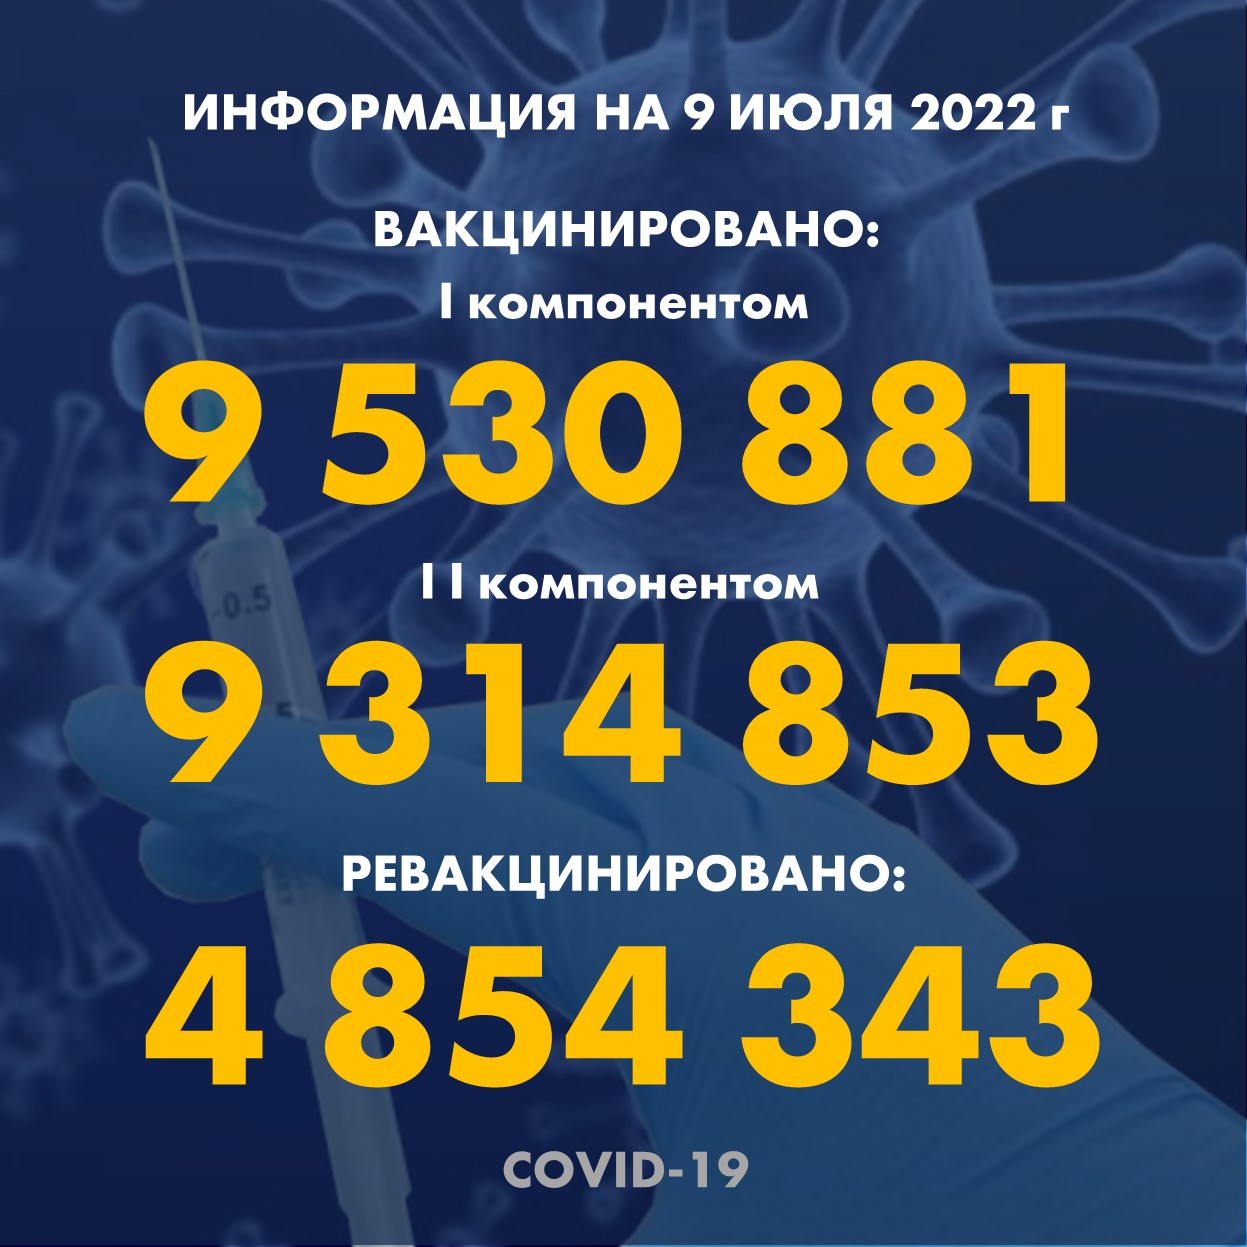 I компонентом 9 530 881 человек провакцинировано в Казахстане на 9.07.2022 г, II компонентом 9 314 853 человек. Ревакцинировано – 4 854 343